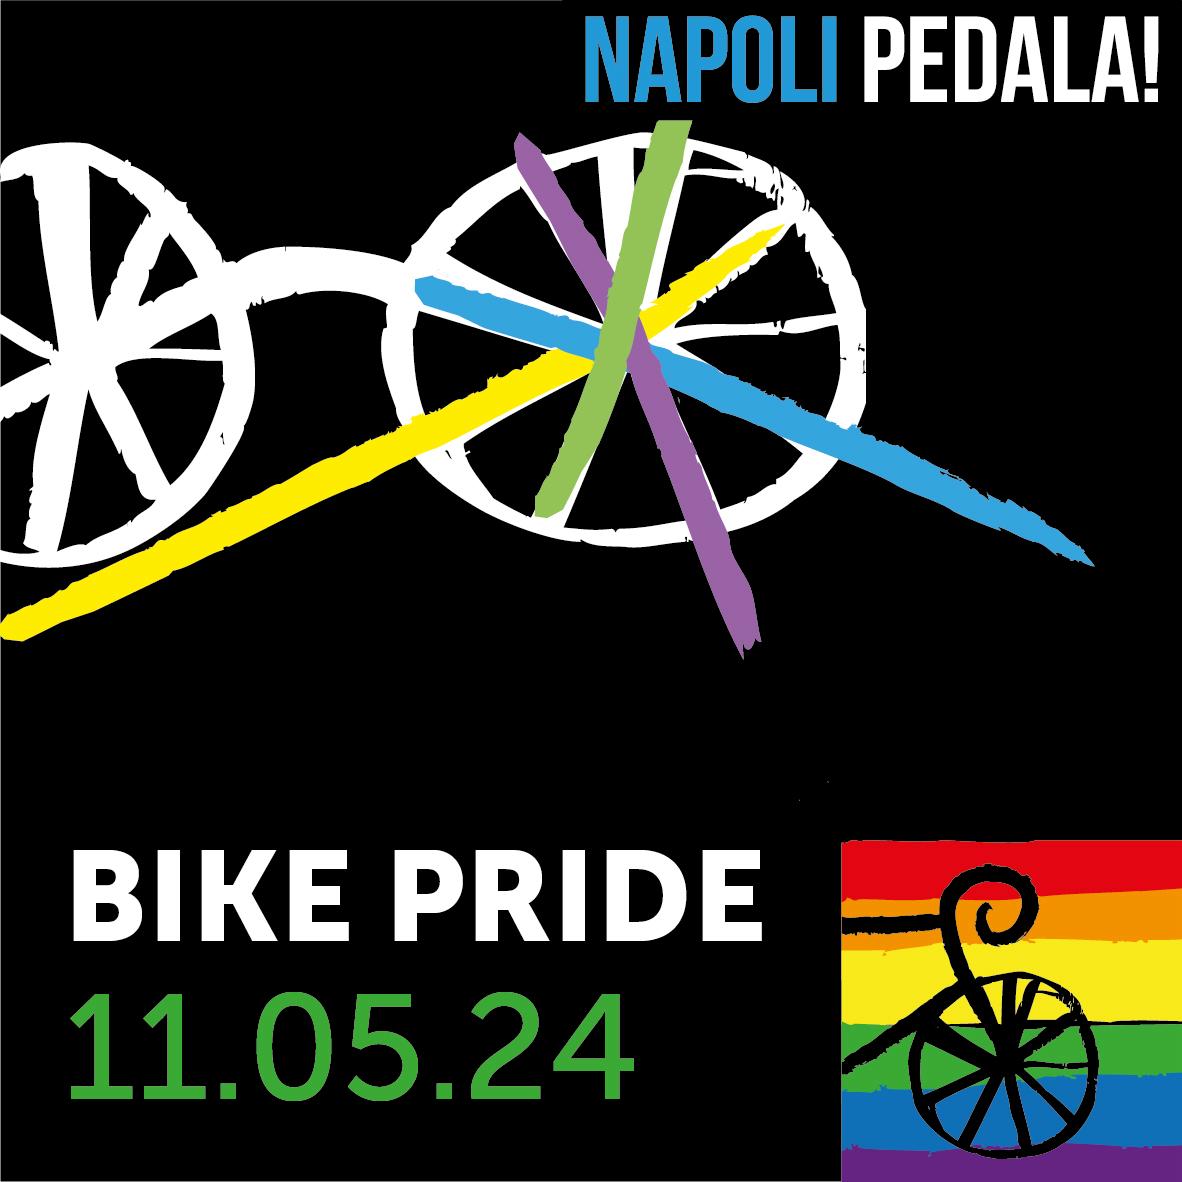 Bike pride “Non prendeteci in giro”